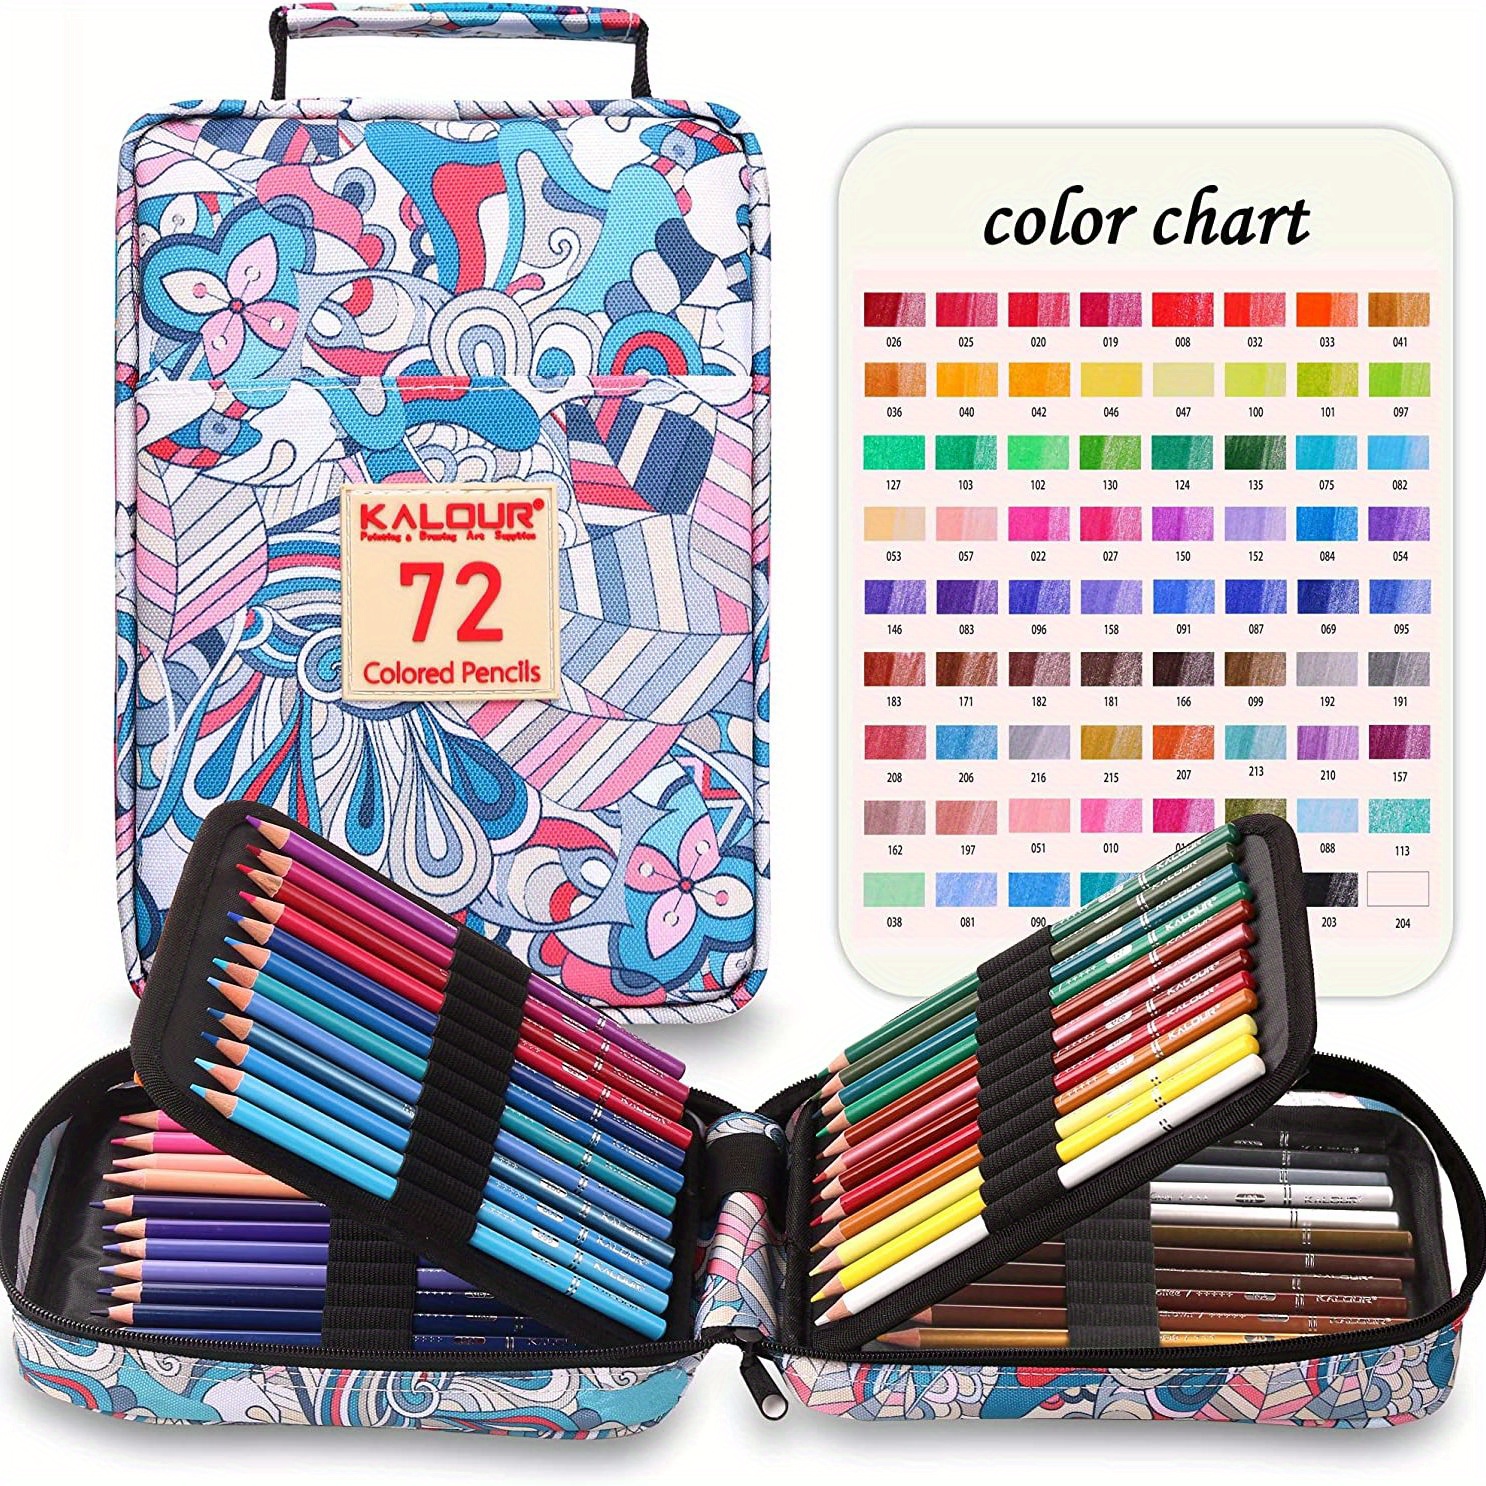  YBLANDEG Kit de lápices de colores de dibujo y boceto, 145  piezas, suministros de arte profesional, juego de lápices de pintura,  lápices de arte de carbón de grafito, adolescentes, adultos y